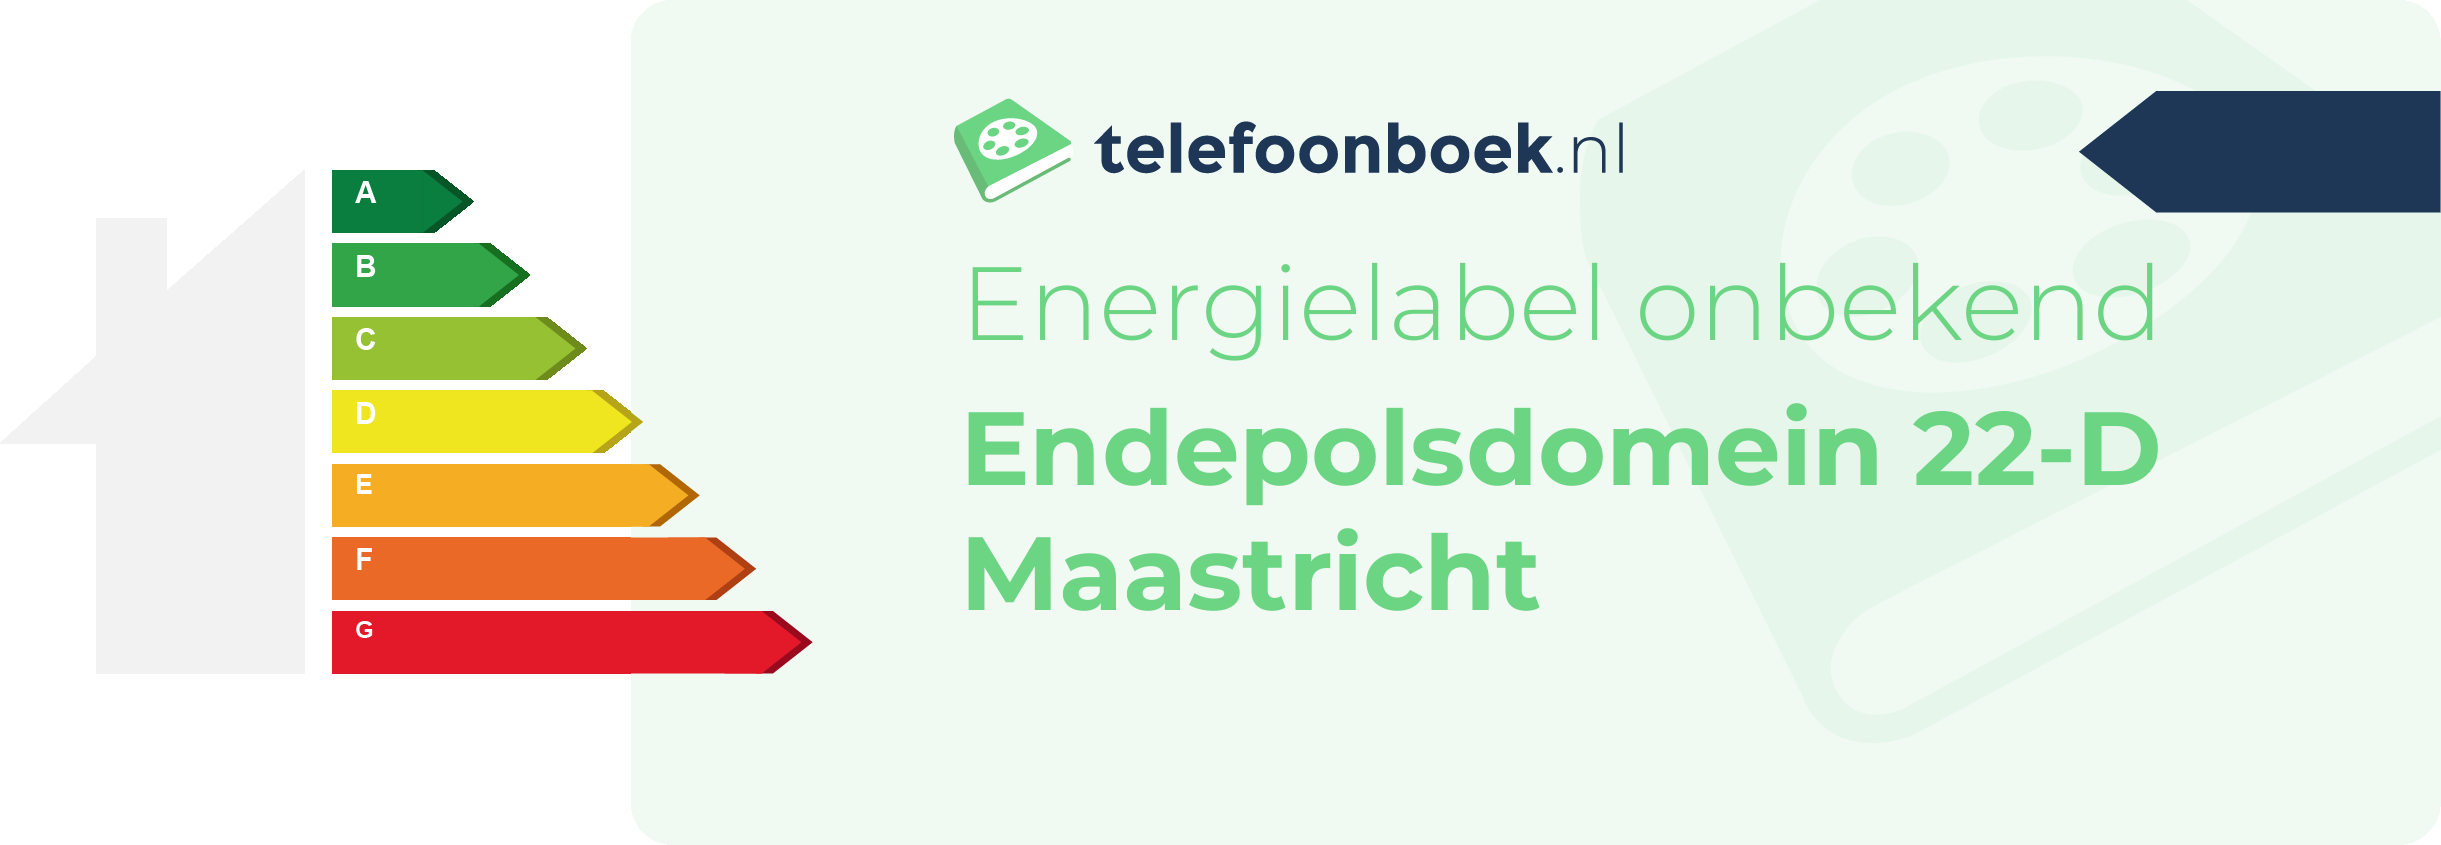 Energielabel Endepolsdomein 22-D Maastricht